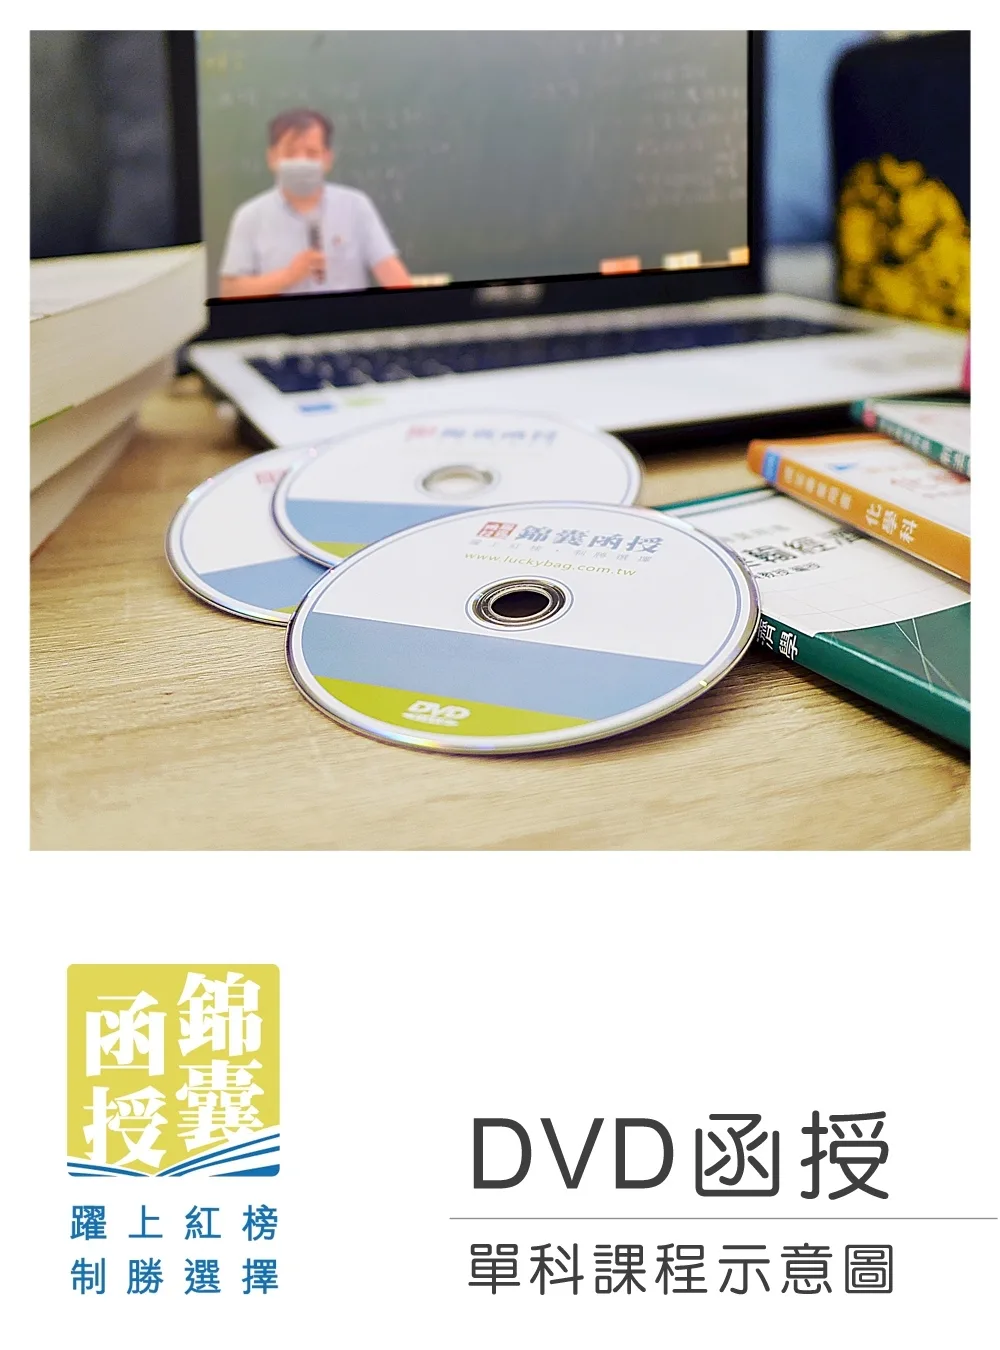 【DVD函授】法學緒論-單科課程(112版)